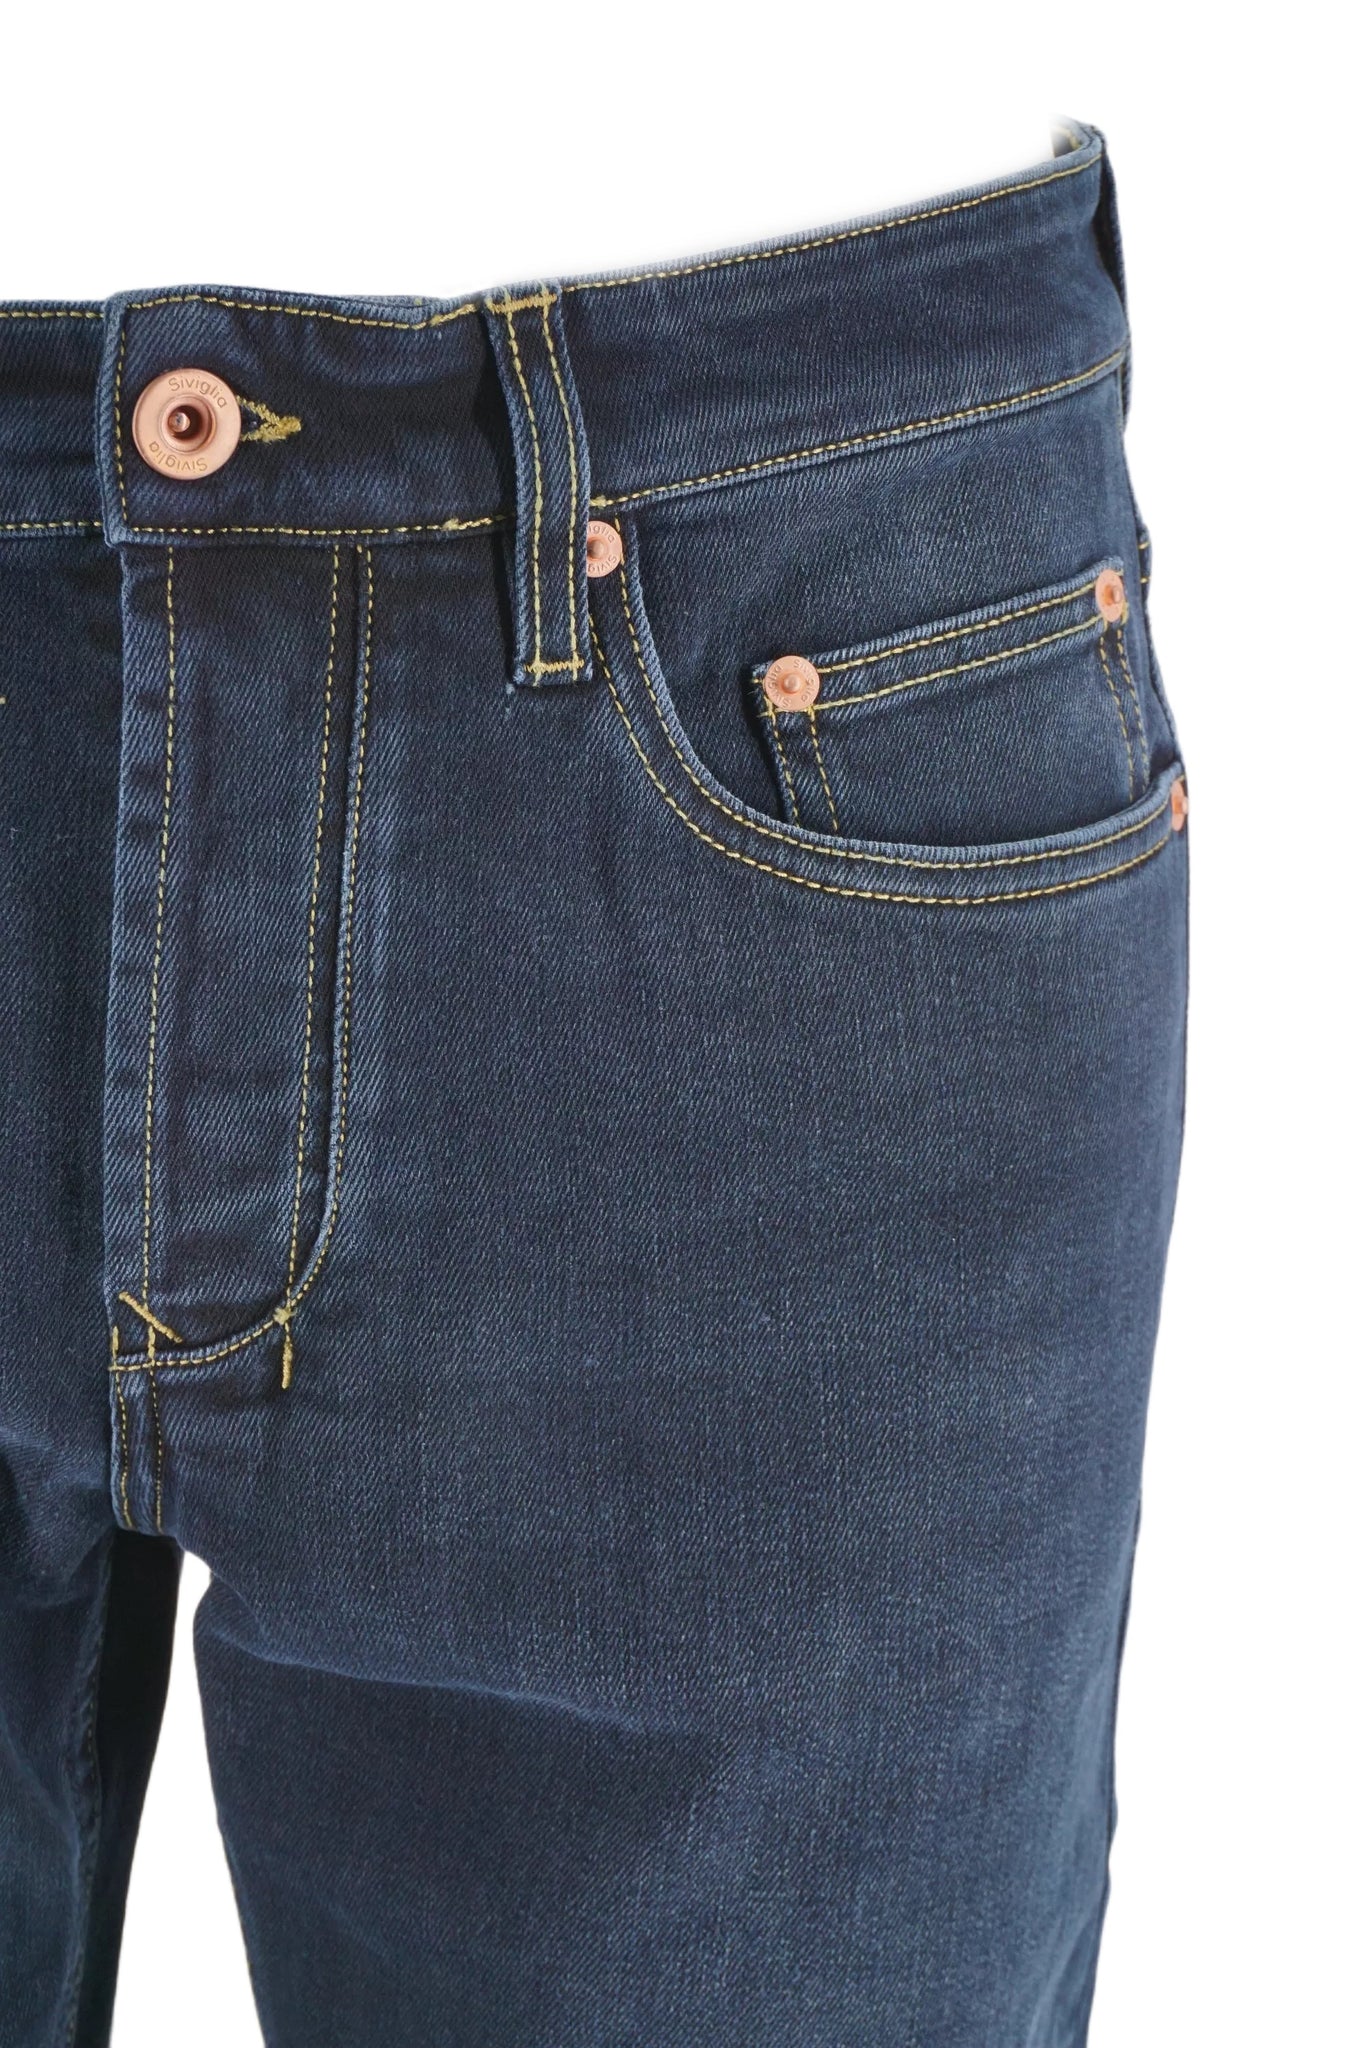 Jeans Cinque Tasche Siviglia / Jeans - Ideal Moda